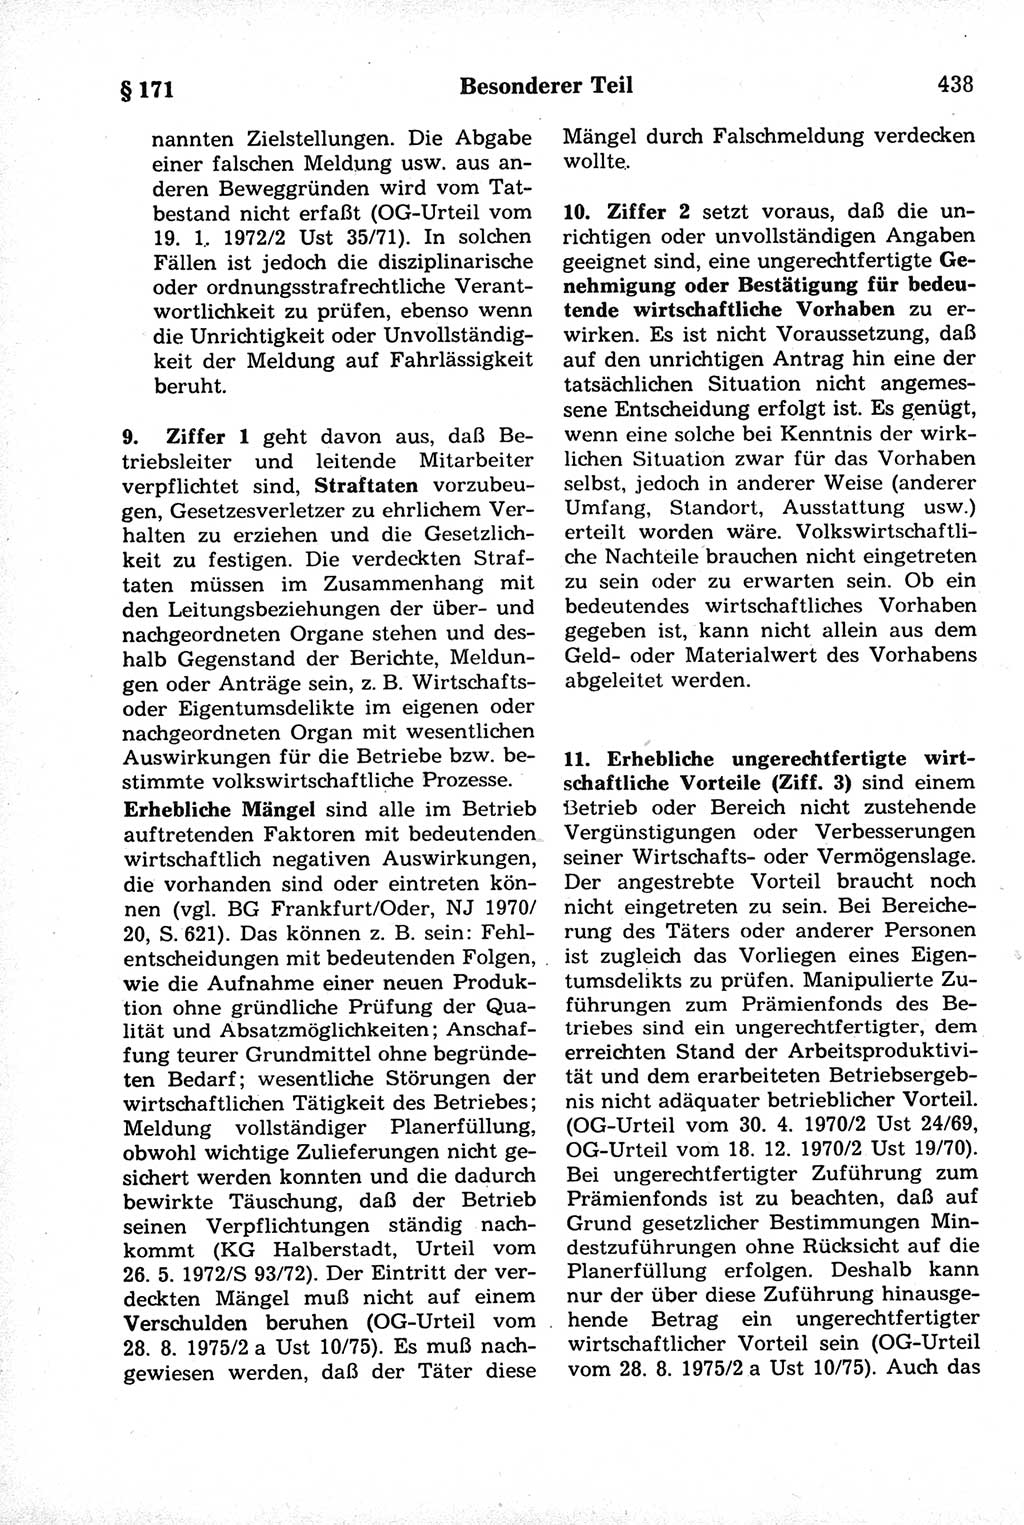 Strafrecht der Deutschen Demokratischen Republik (DDR), Kommentar zum Strafgesetzbuch (StGB) 1981, Seite 438 (Strafr. DDR Komm. StGB 1981, S. 438)